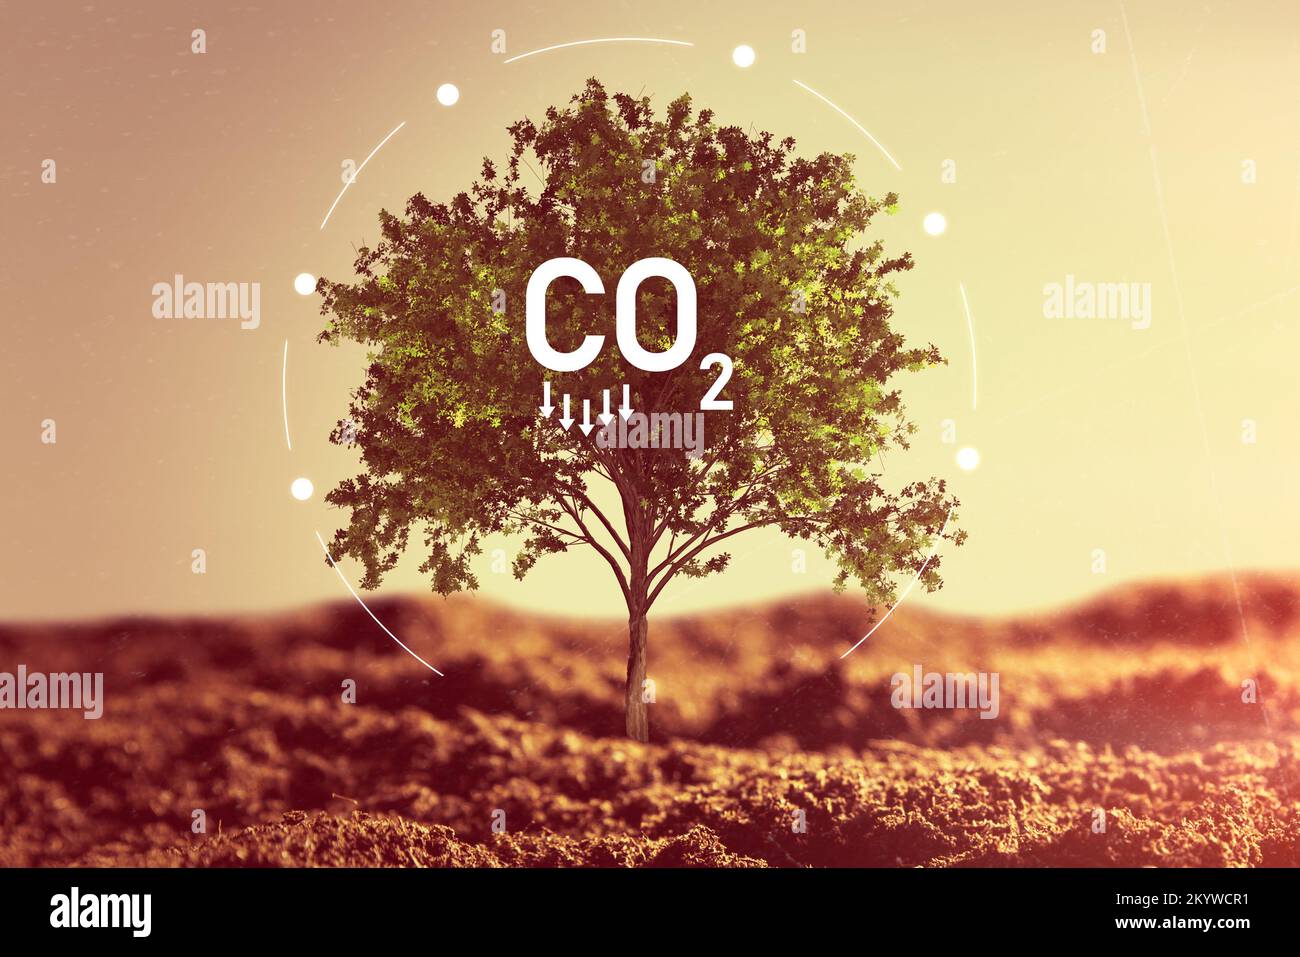 Dióxido de carbono, emisiones de CO2, concepto de huella de carbono Foto de stock